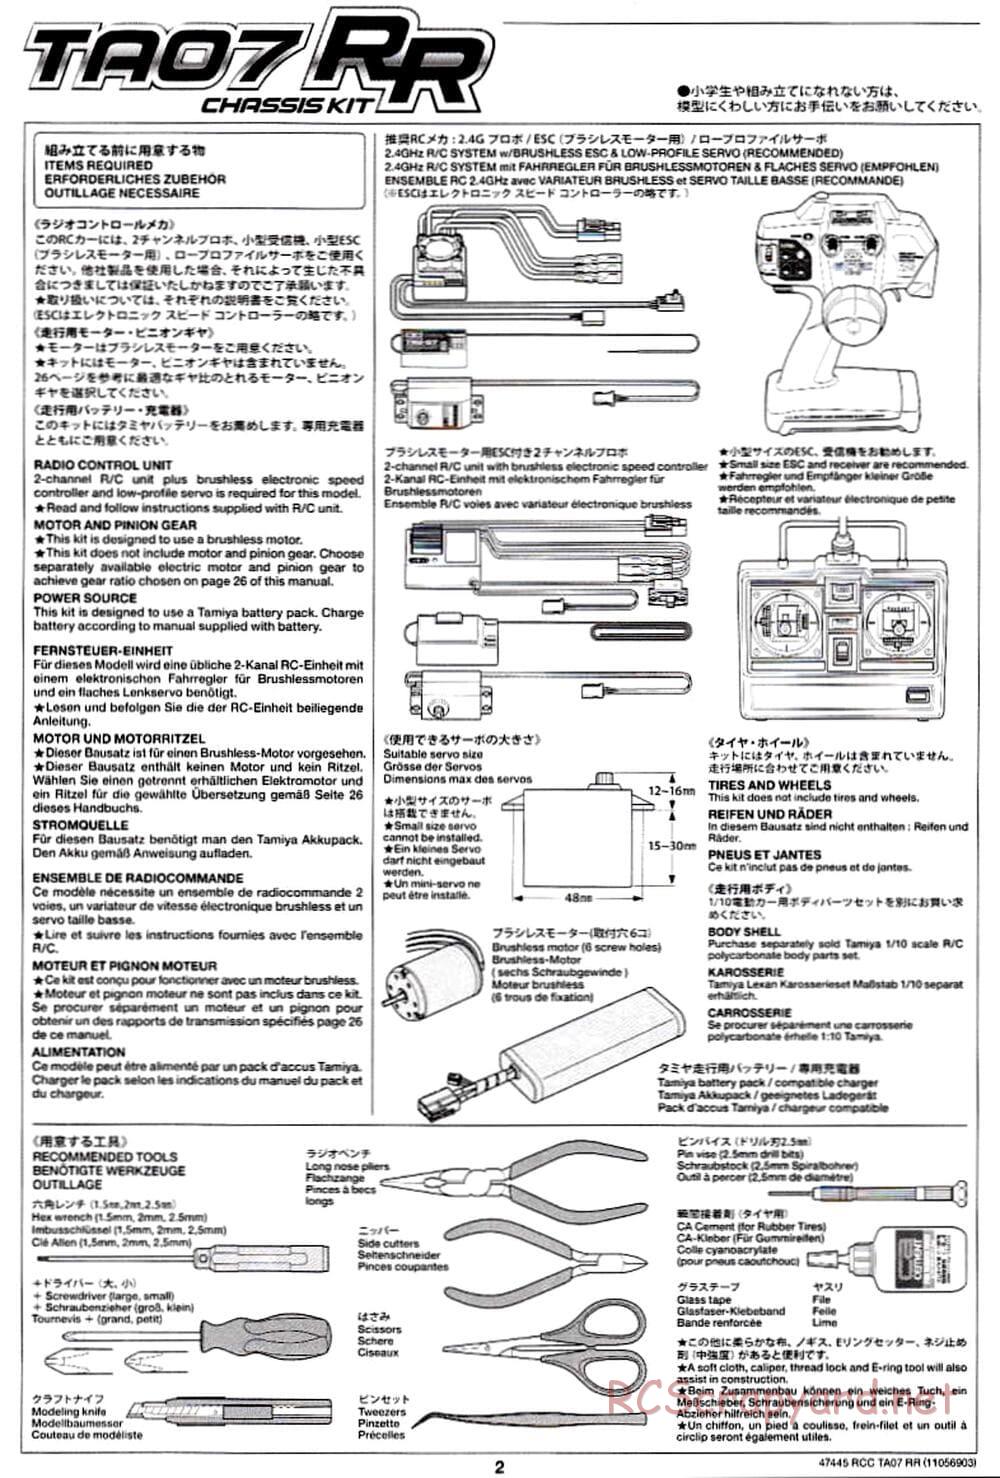 Tamiya - TA07 RR Chassis - Manual - Page 2